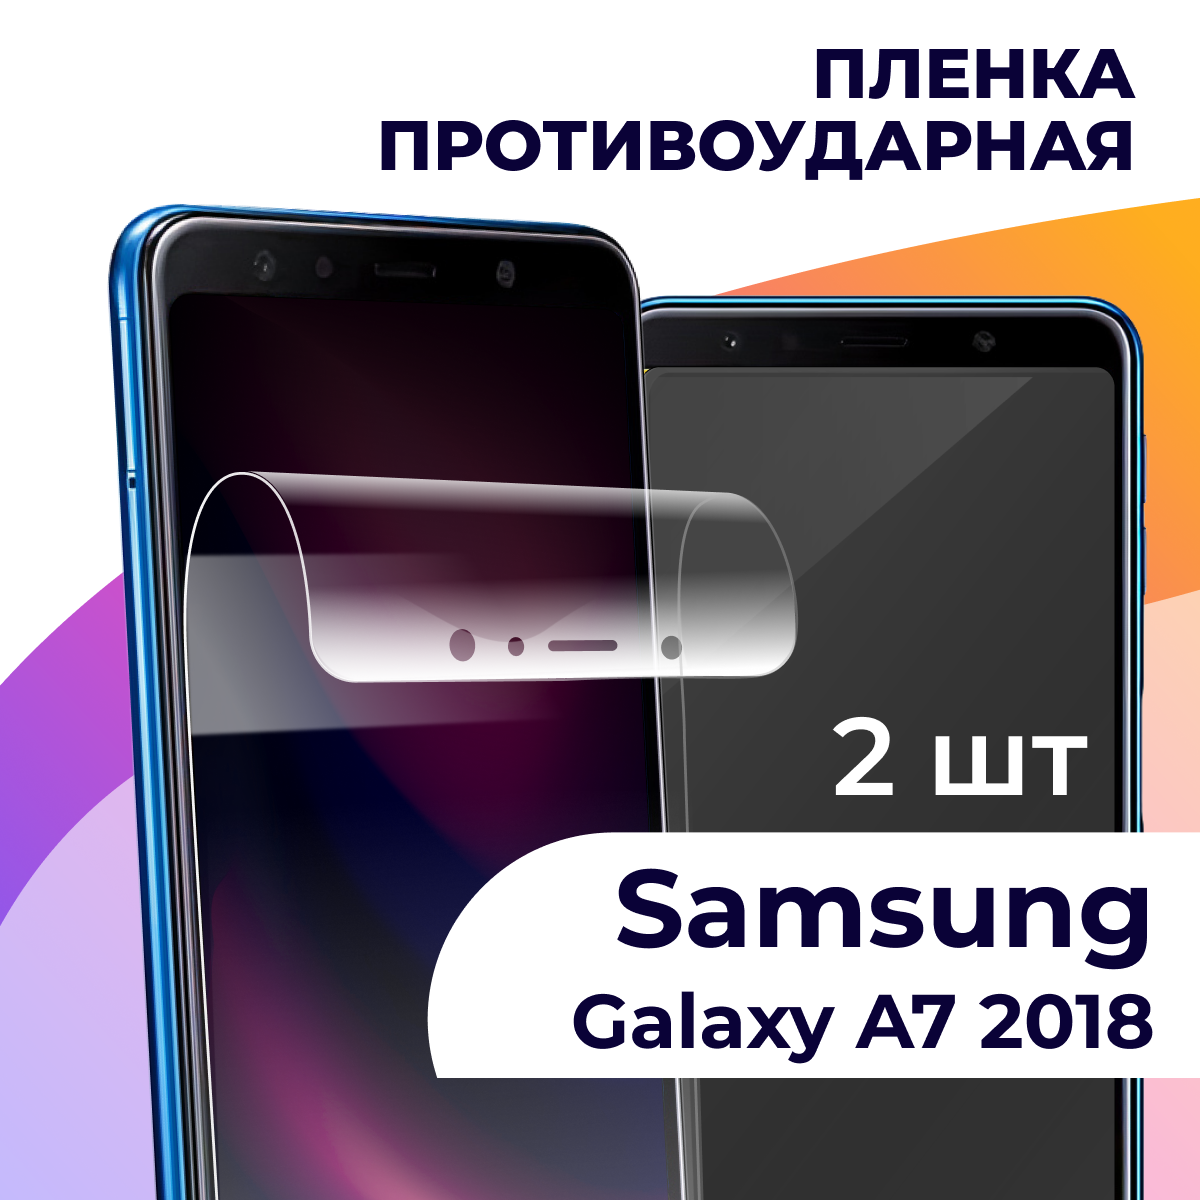 Комплект 2 шт. Гидрогелевая пленка для смартфона Samsung Galaxy A7 2018 / Противоударная пленка на телефон Самсунг Галакси А7 2018 / Защитная пленка